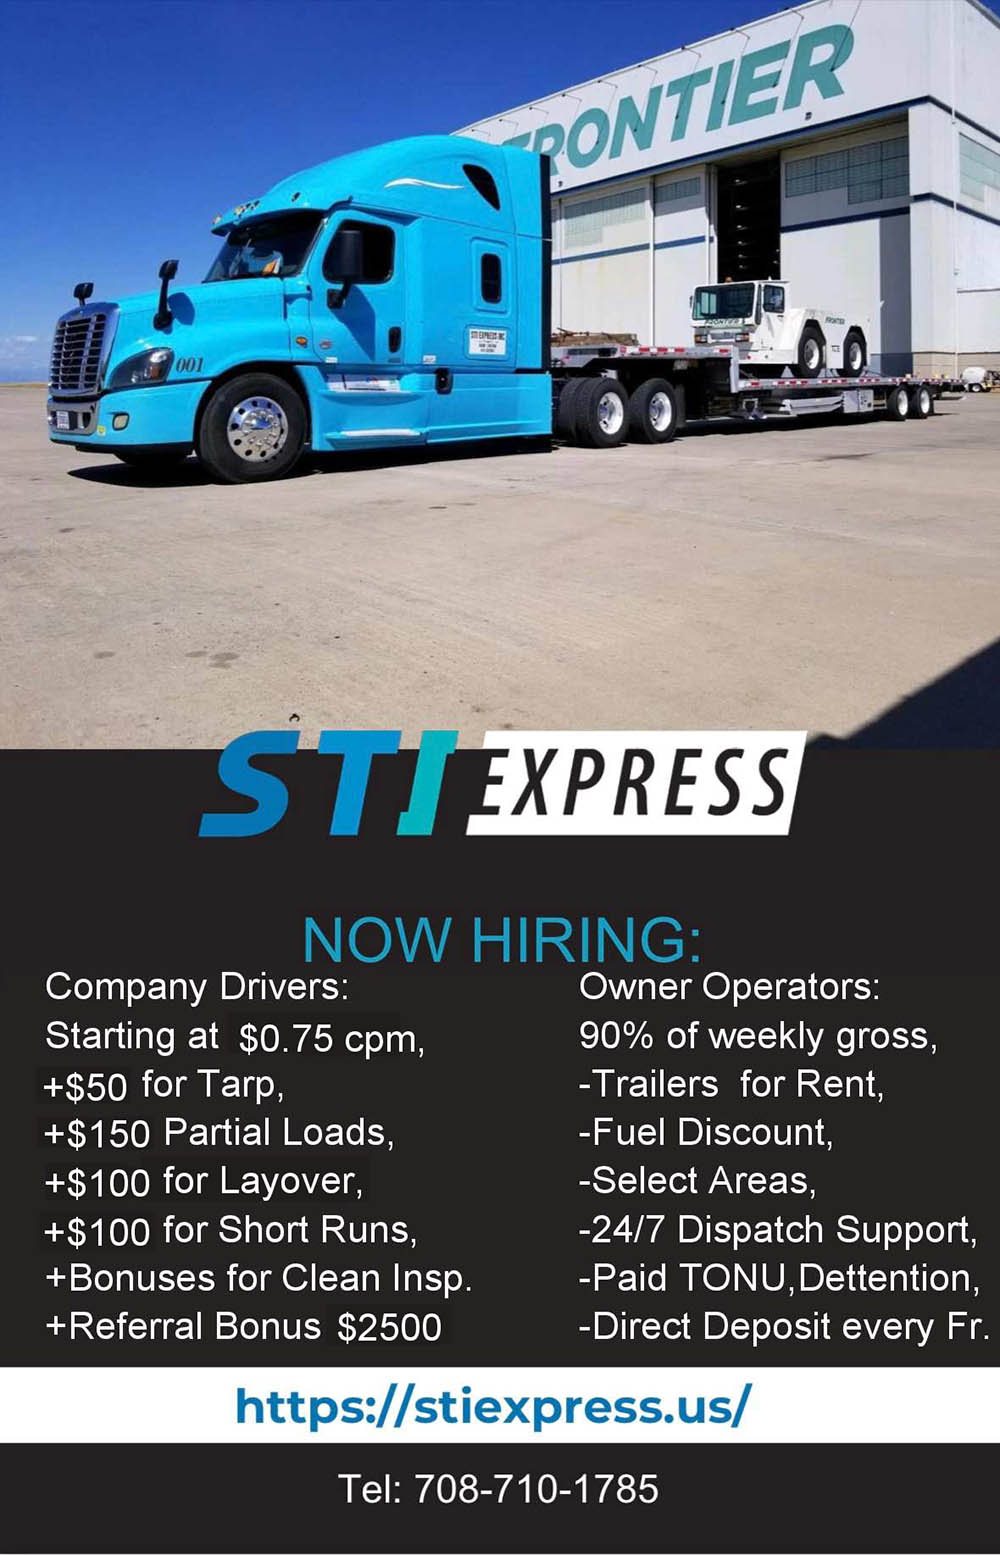 STI Express